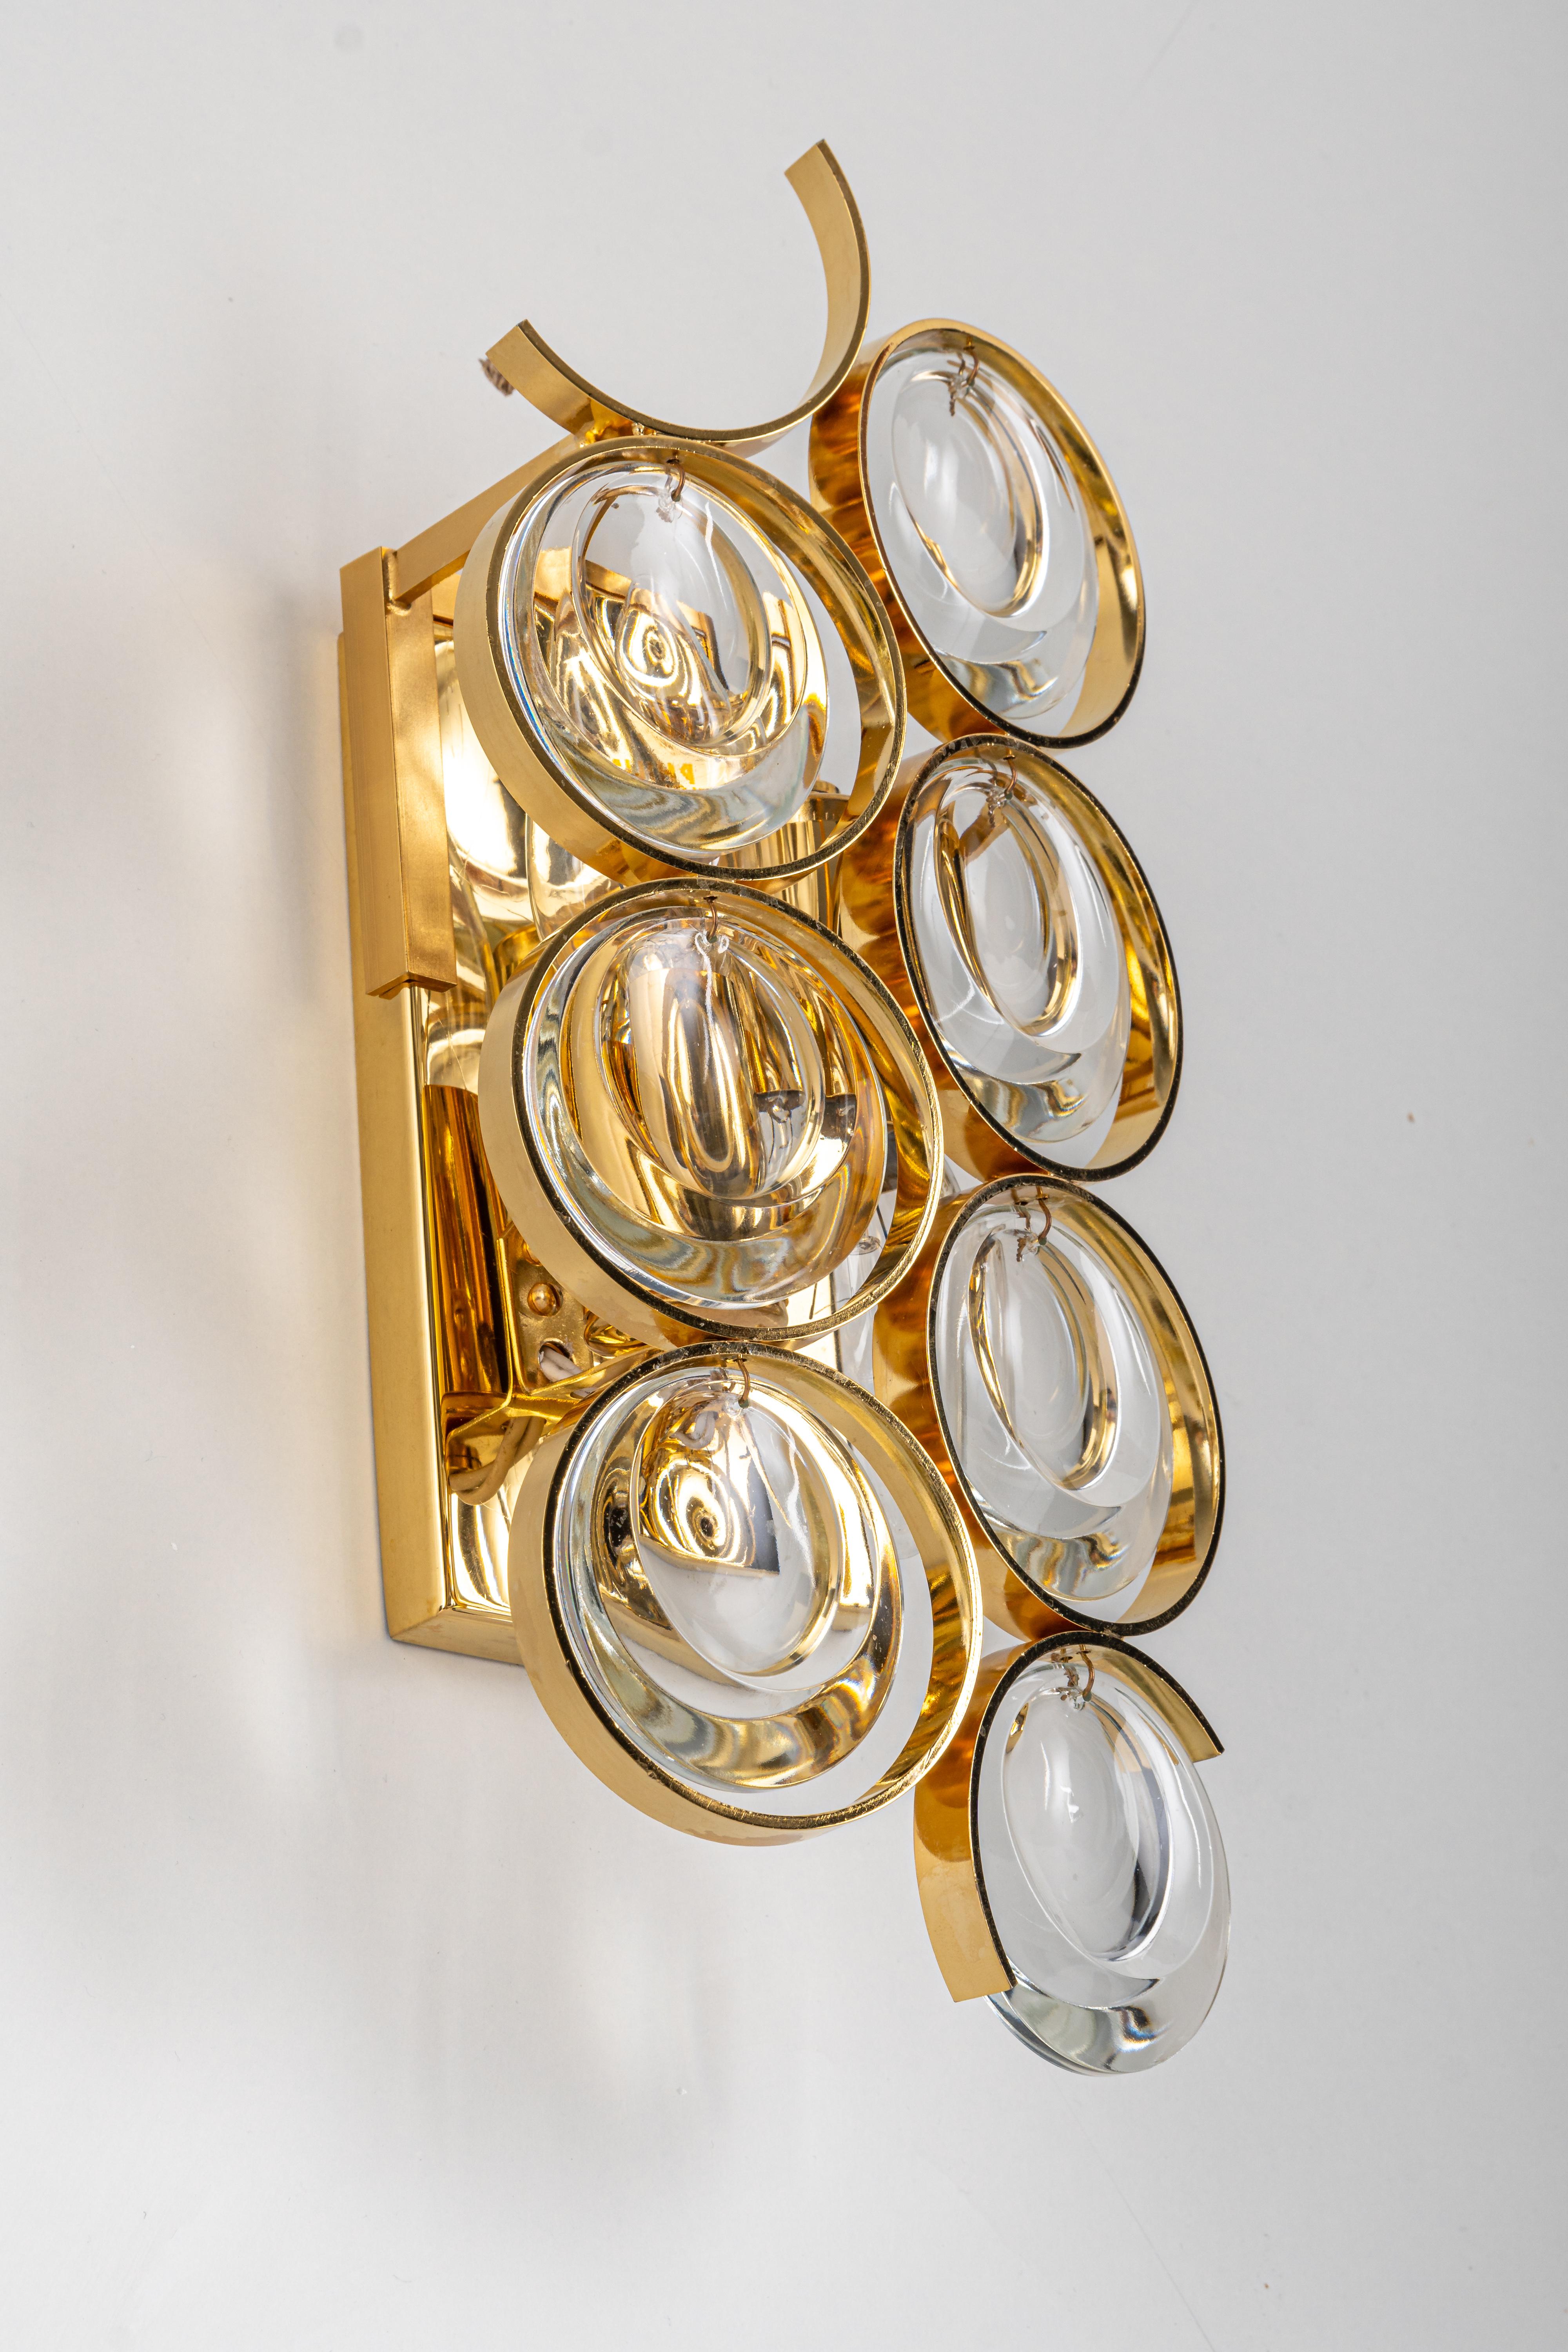 Ein wunderschöner goldener Wandleuchter, hergestellt von Palwa, Deutschland, ca. 1960-1969. Kristallgläser auf einem vergoldeten Messingrahmen.
Das Beste aus den 1960er Jahren aus Deutschland.

Hochwertig und in sehr gutem Zustand. Gereinigt, gut